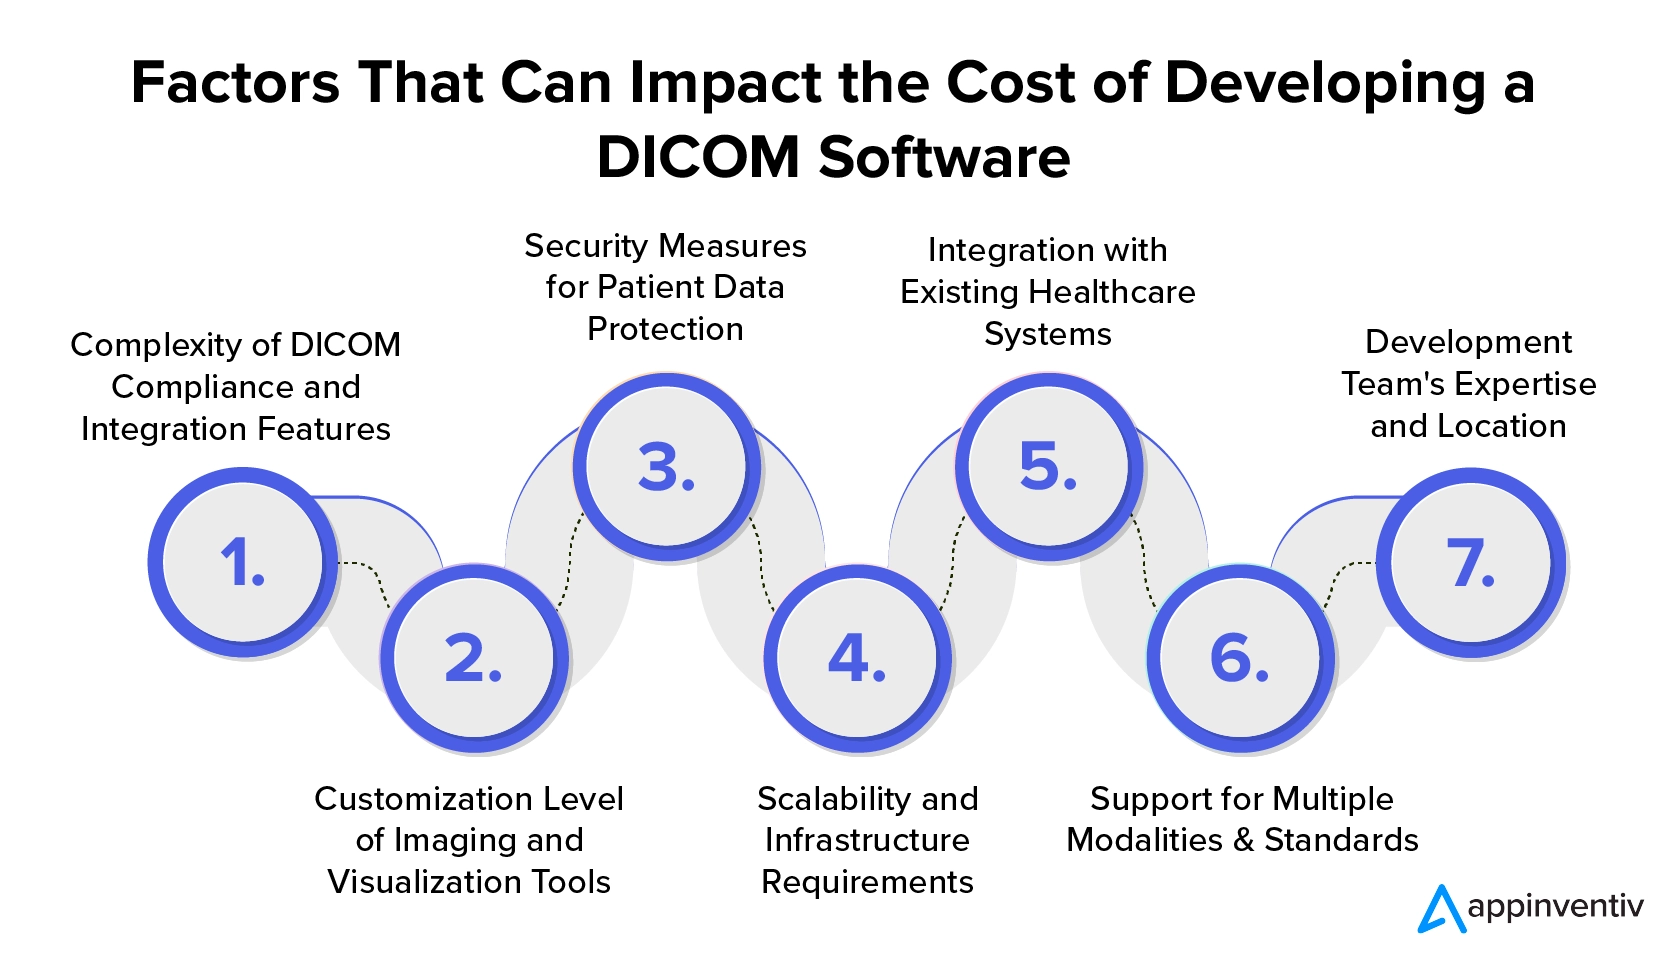 Czynniki, które mogą mieć wpływ na koszt opracowania oprogramowania DICOM